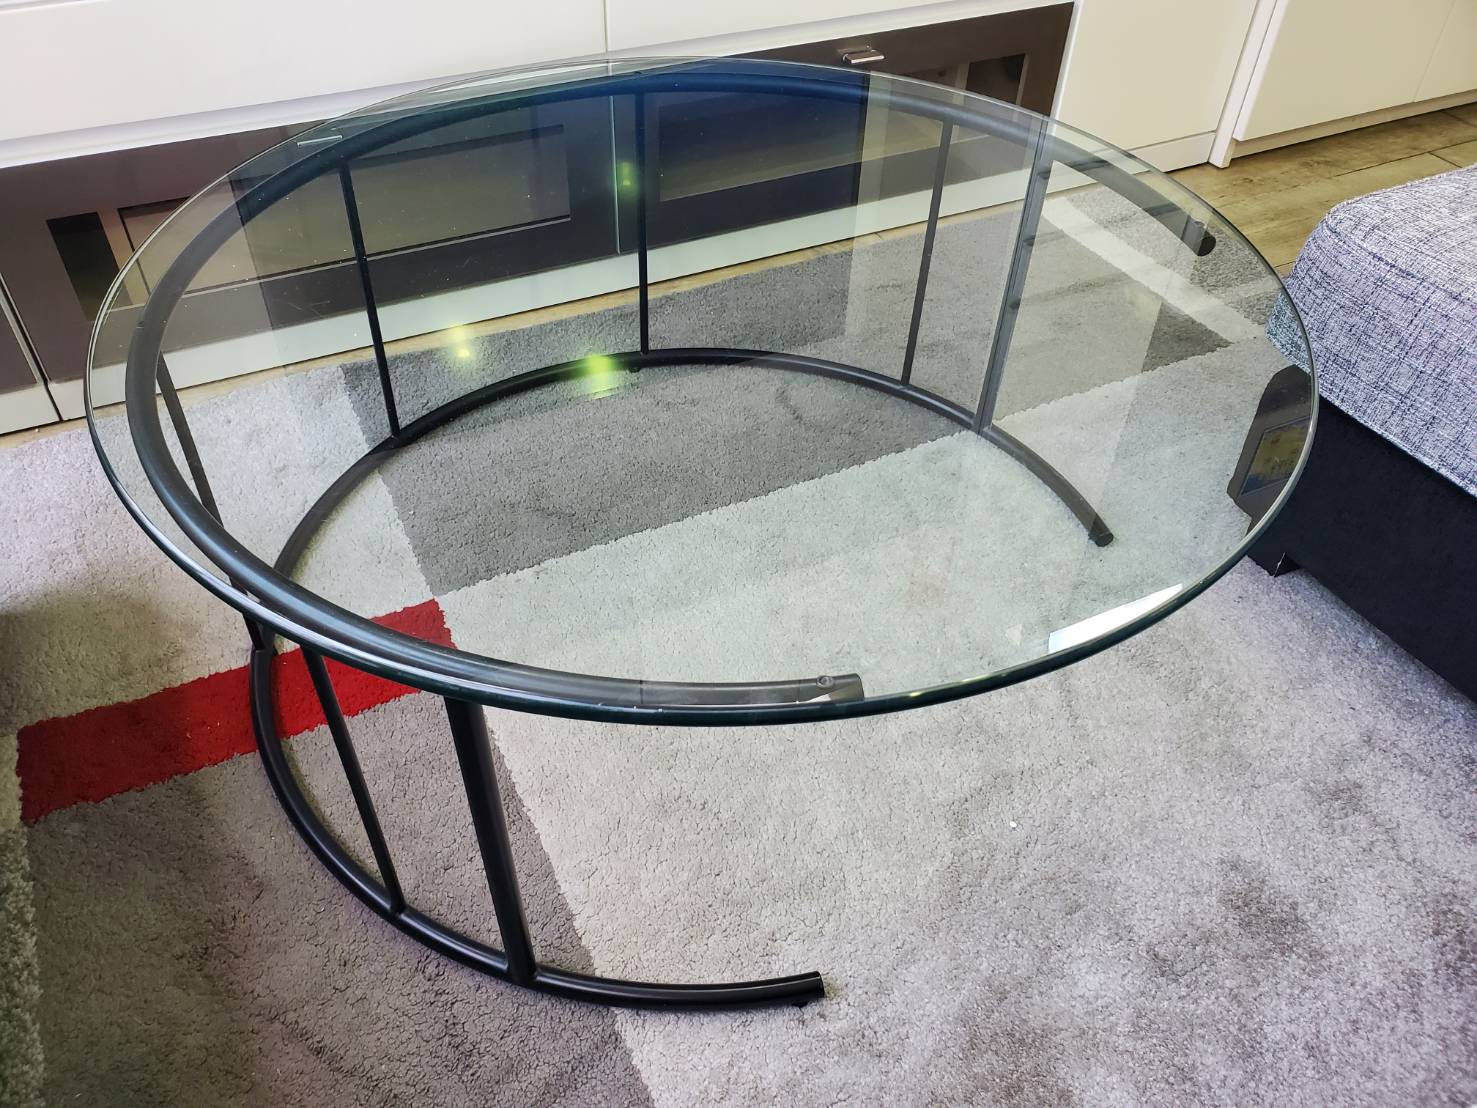 ◎【日本フクラ】高級家具 円形リビングテーブル TMRC ガラス/ウッド 